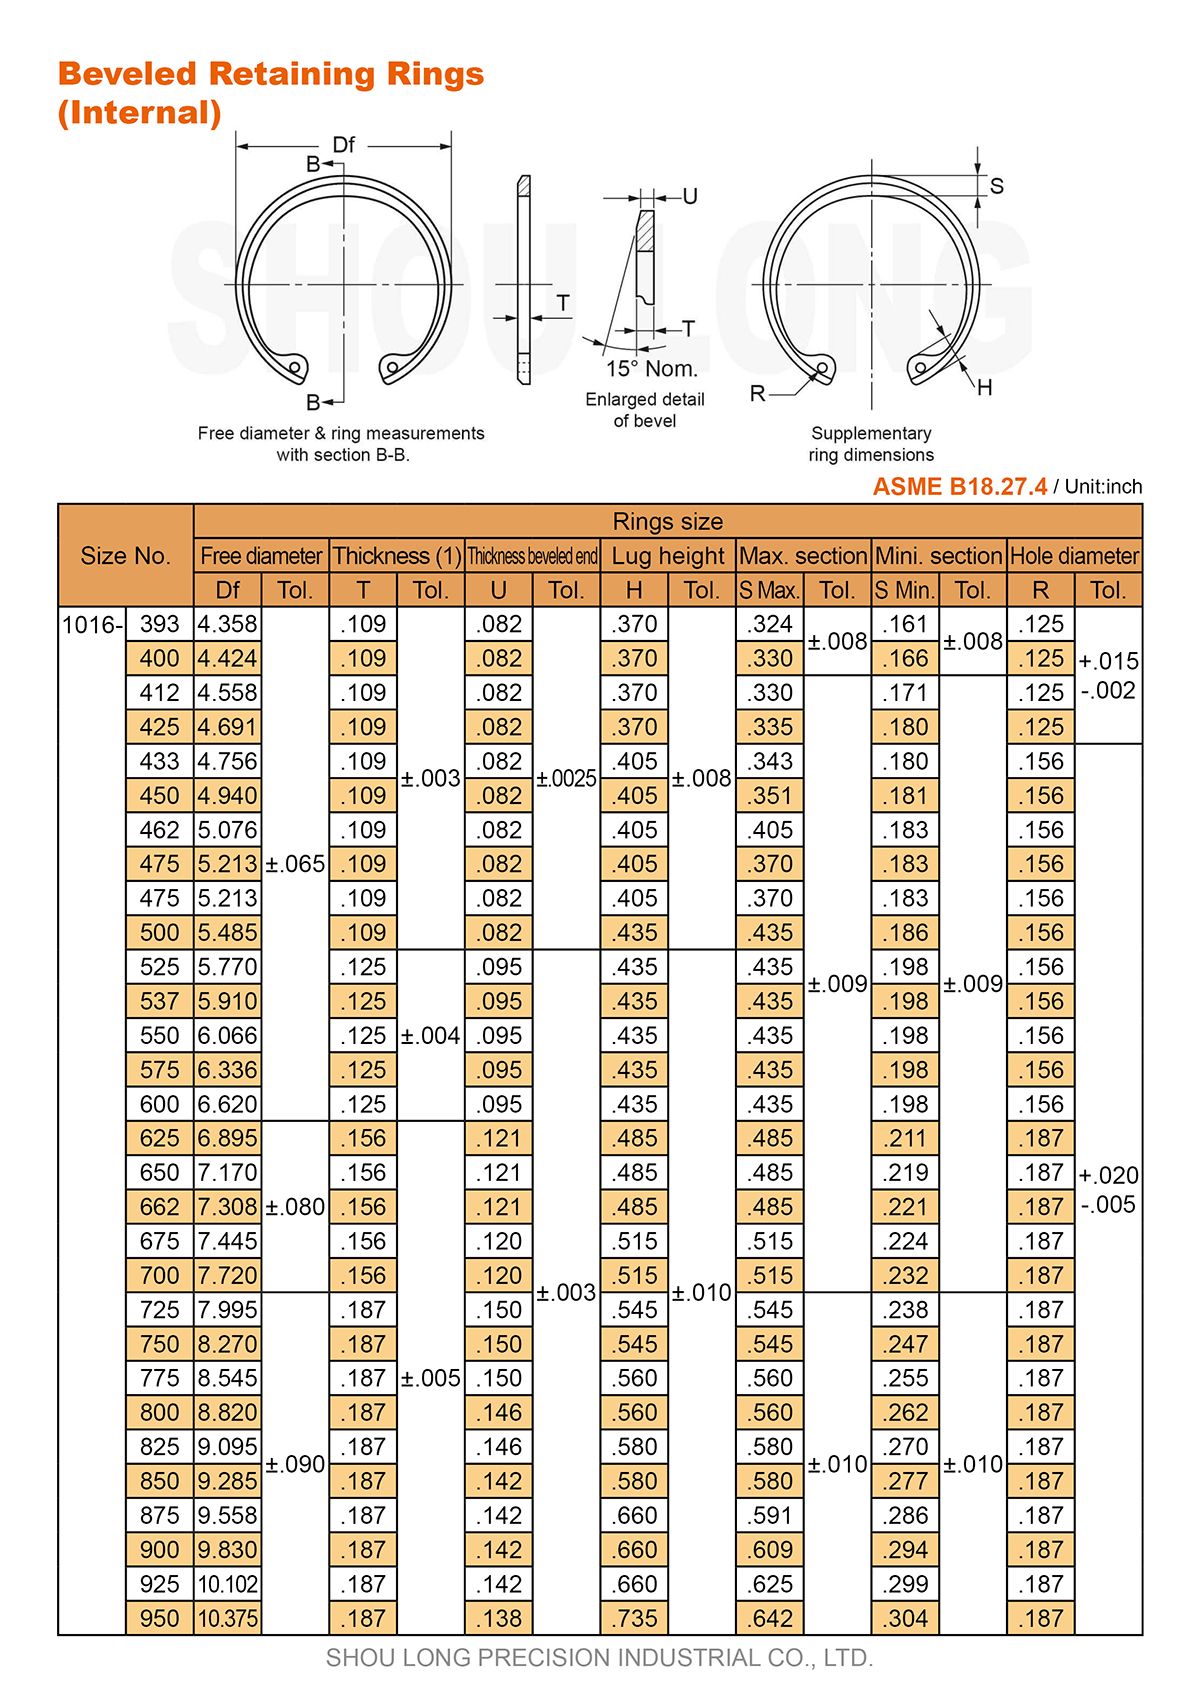 Spesifikasi Cincin Penahan Beveled Inch untuk Lubang ASME/ANSI B18.27.4-3